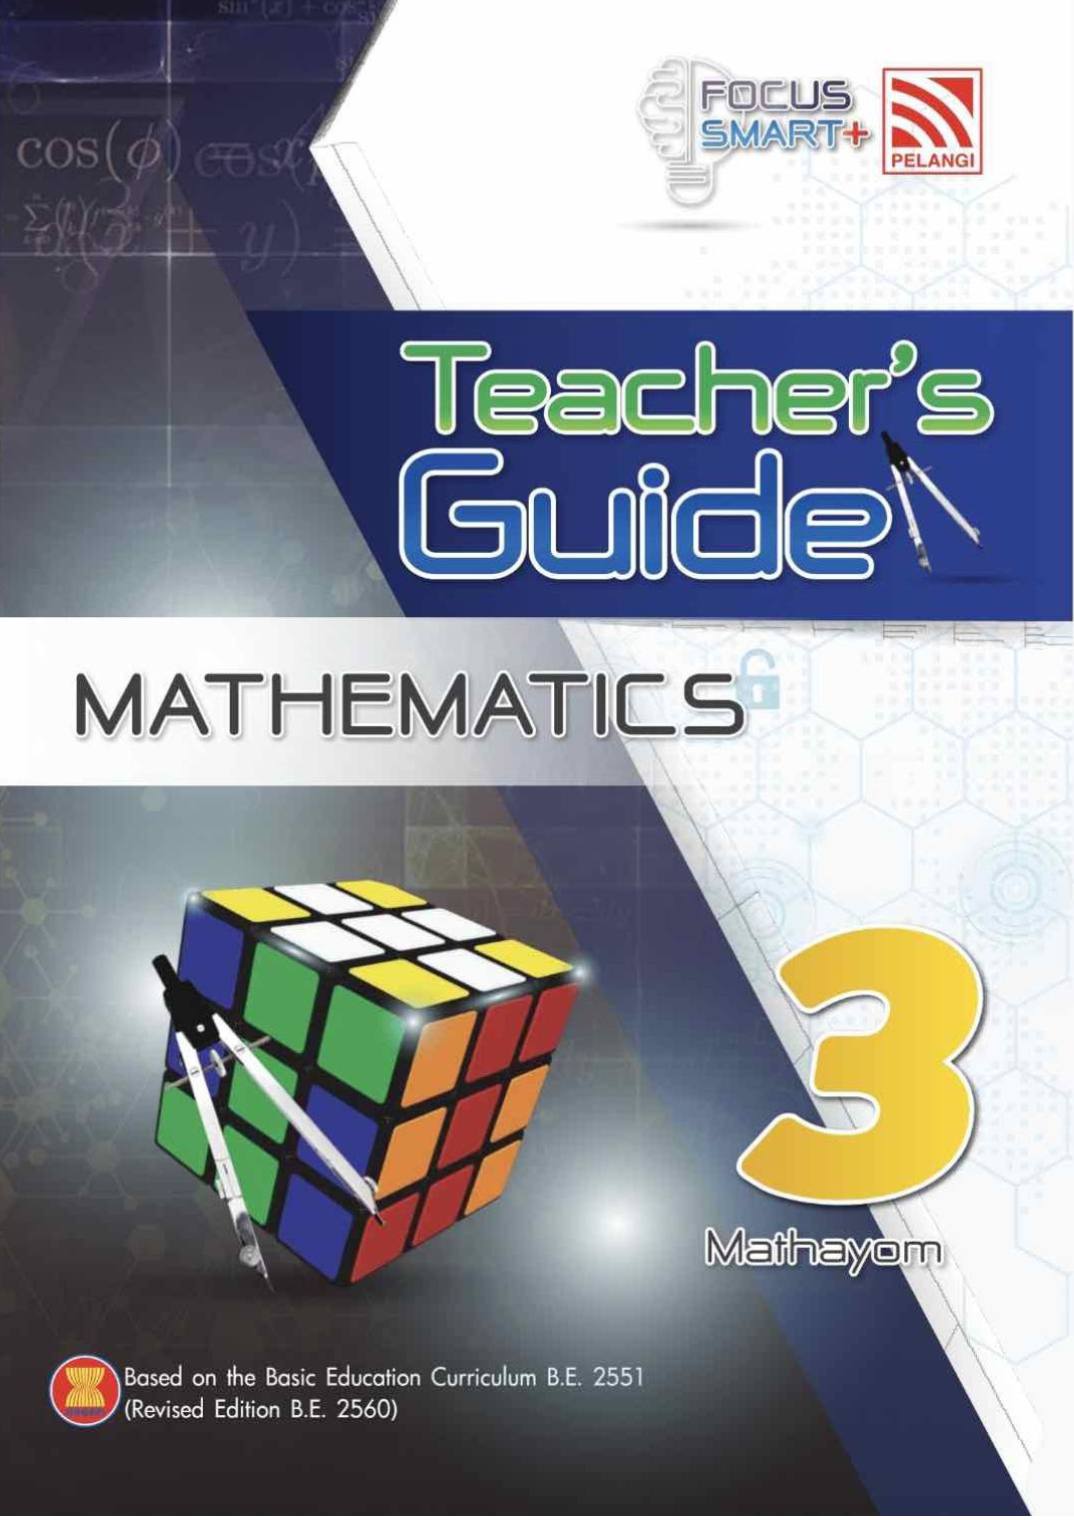 Pelangi Focus Smart Plus Mathematics M3 Teacher Guide